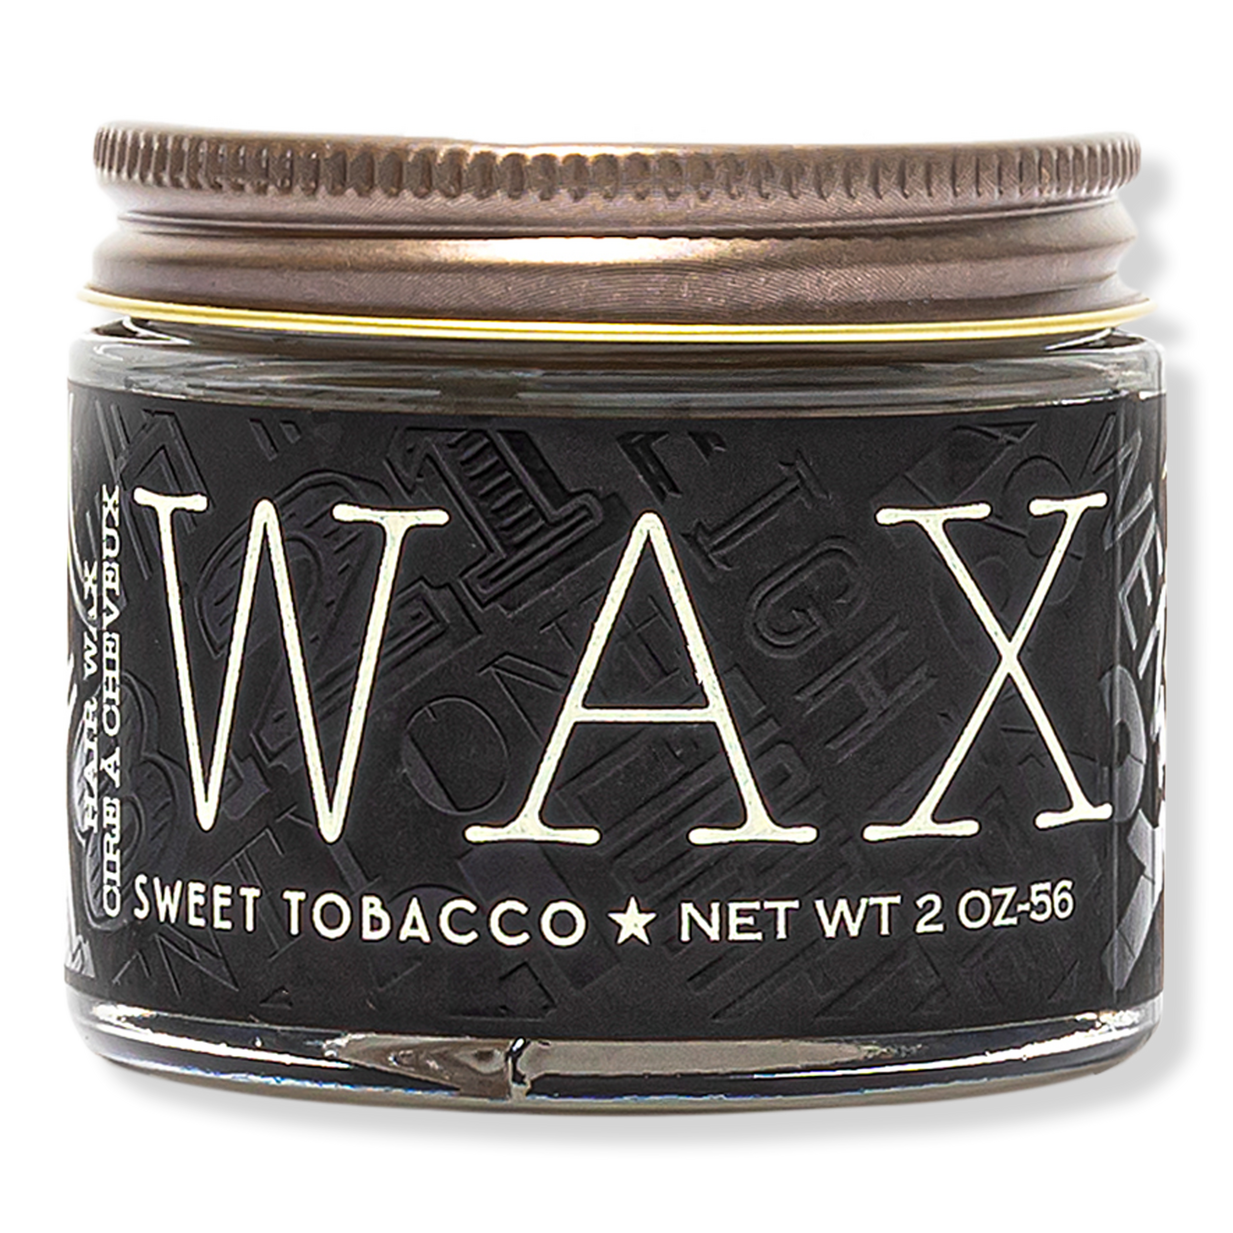 Wax - 18.21 Man Made | Ulta Beauty